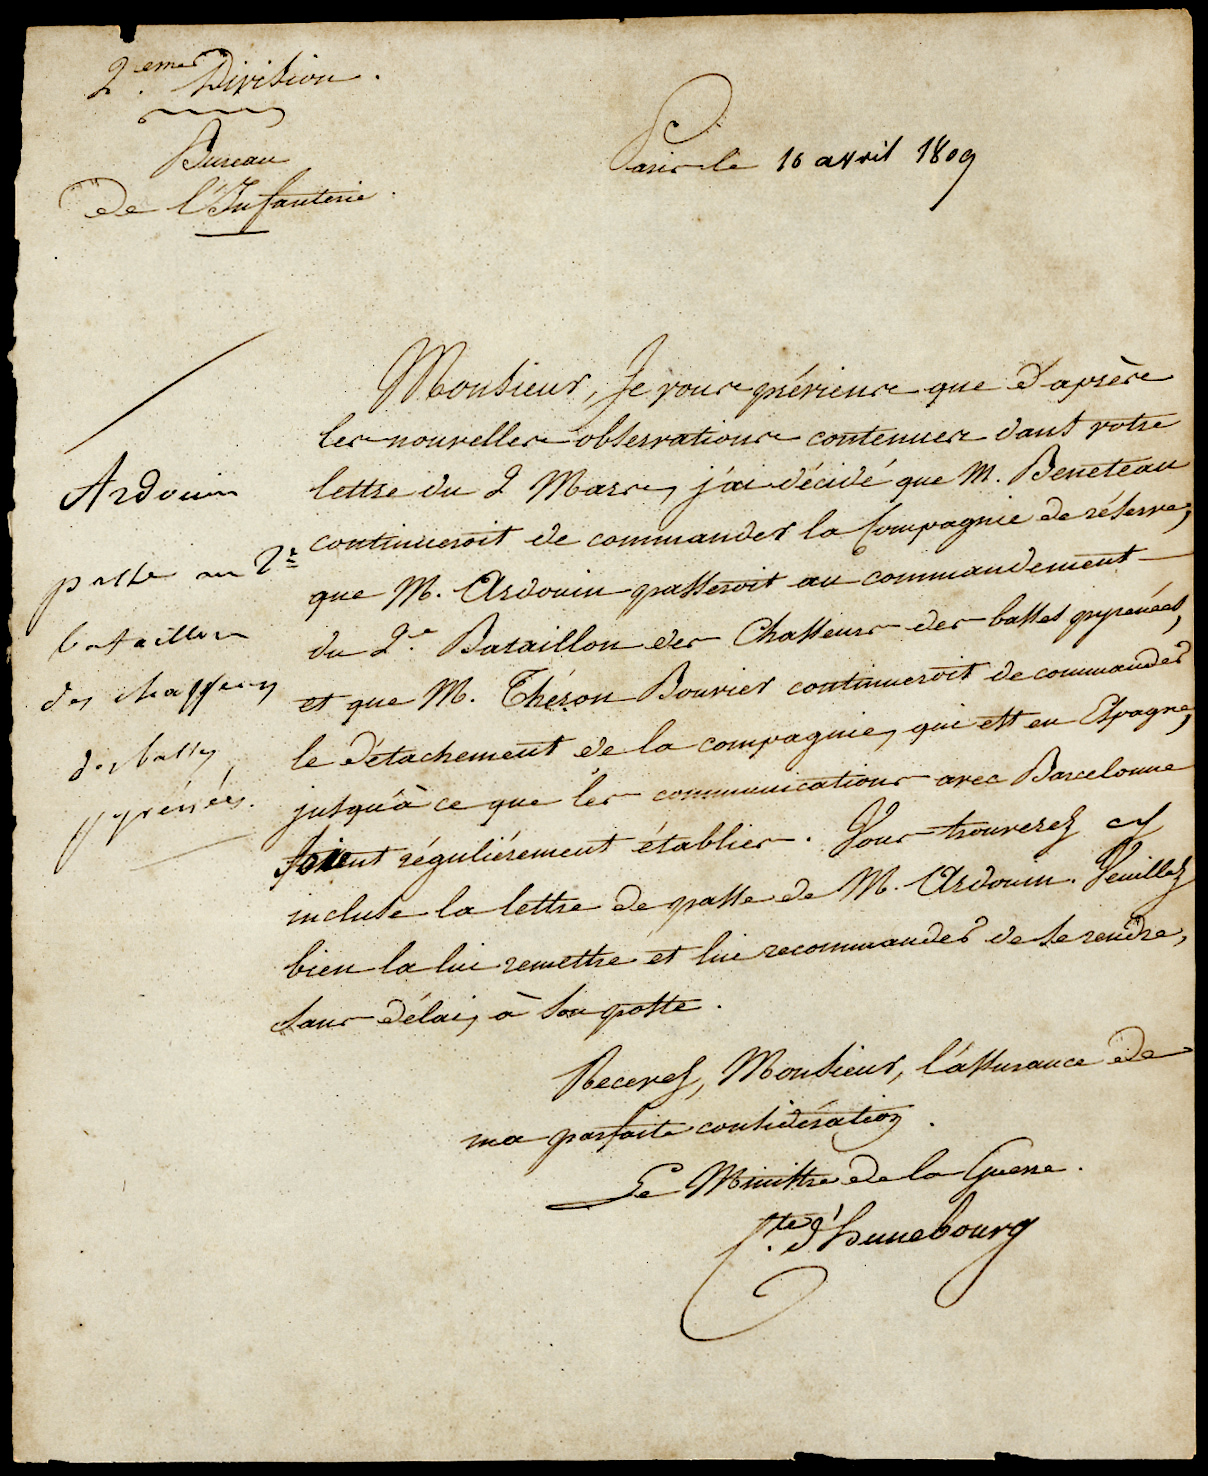 Referenz: clarke-henry-jacques-guilaume-ministre-de-la-guerre-1807-1814-comte-d-hunebourg